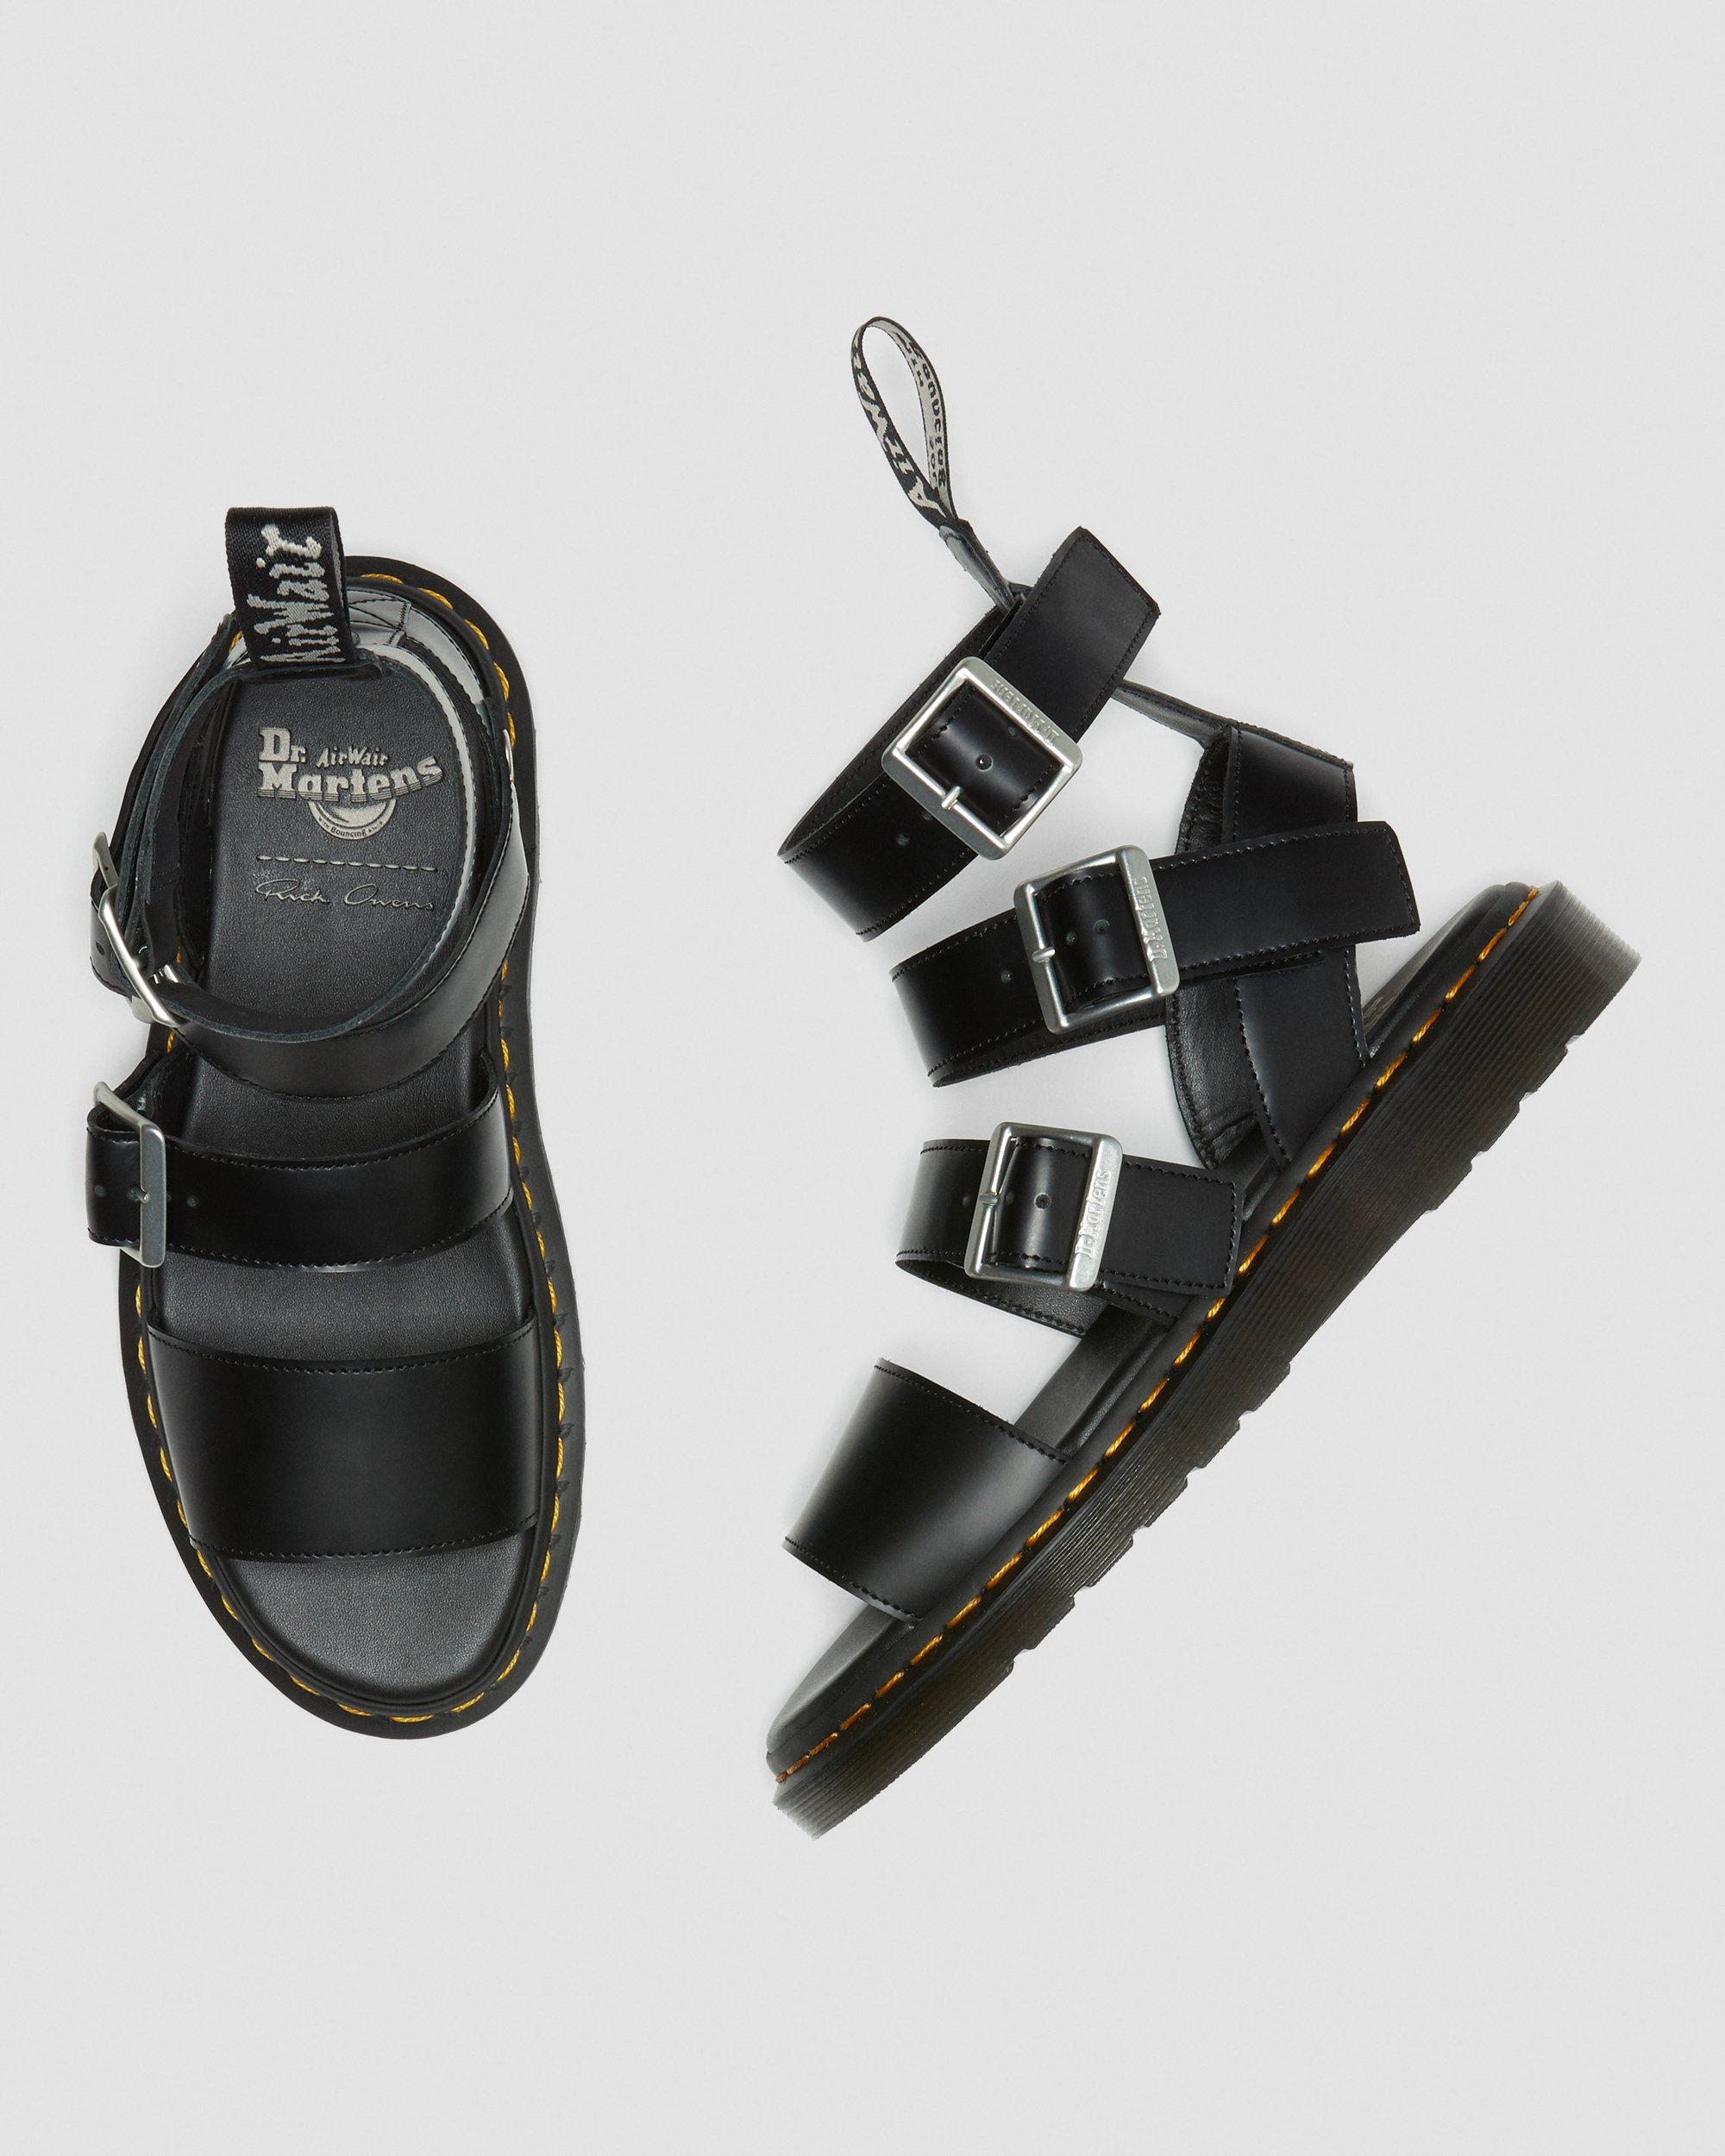 DR MARTENS Gryphon Rick Owens Leather Gladiator Sandals